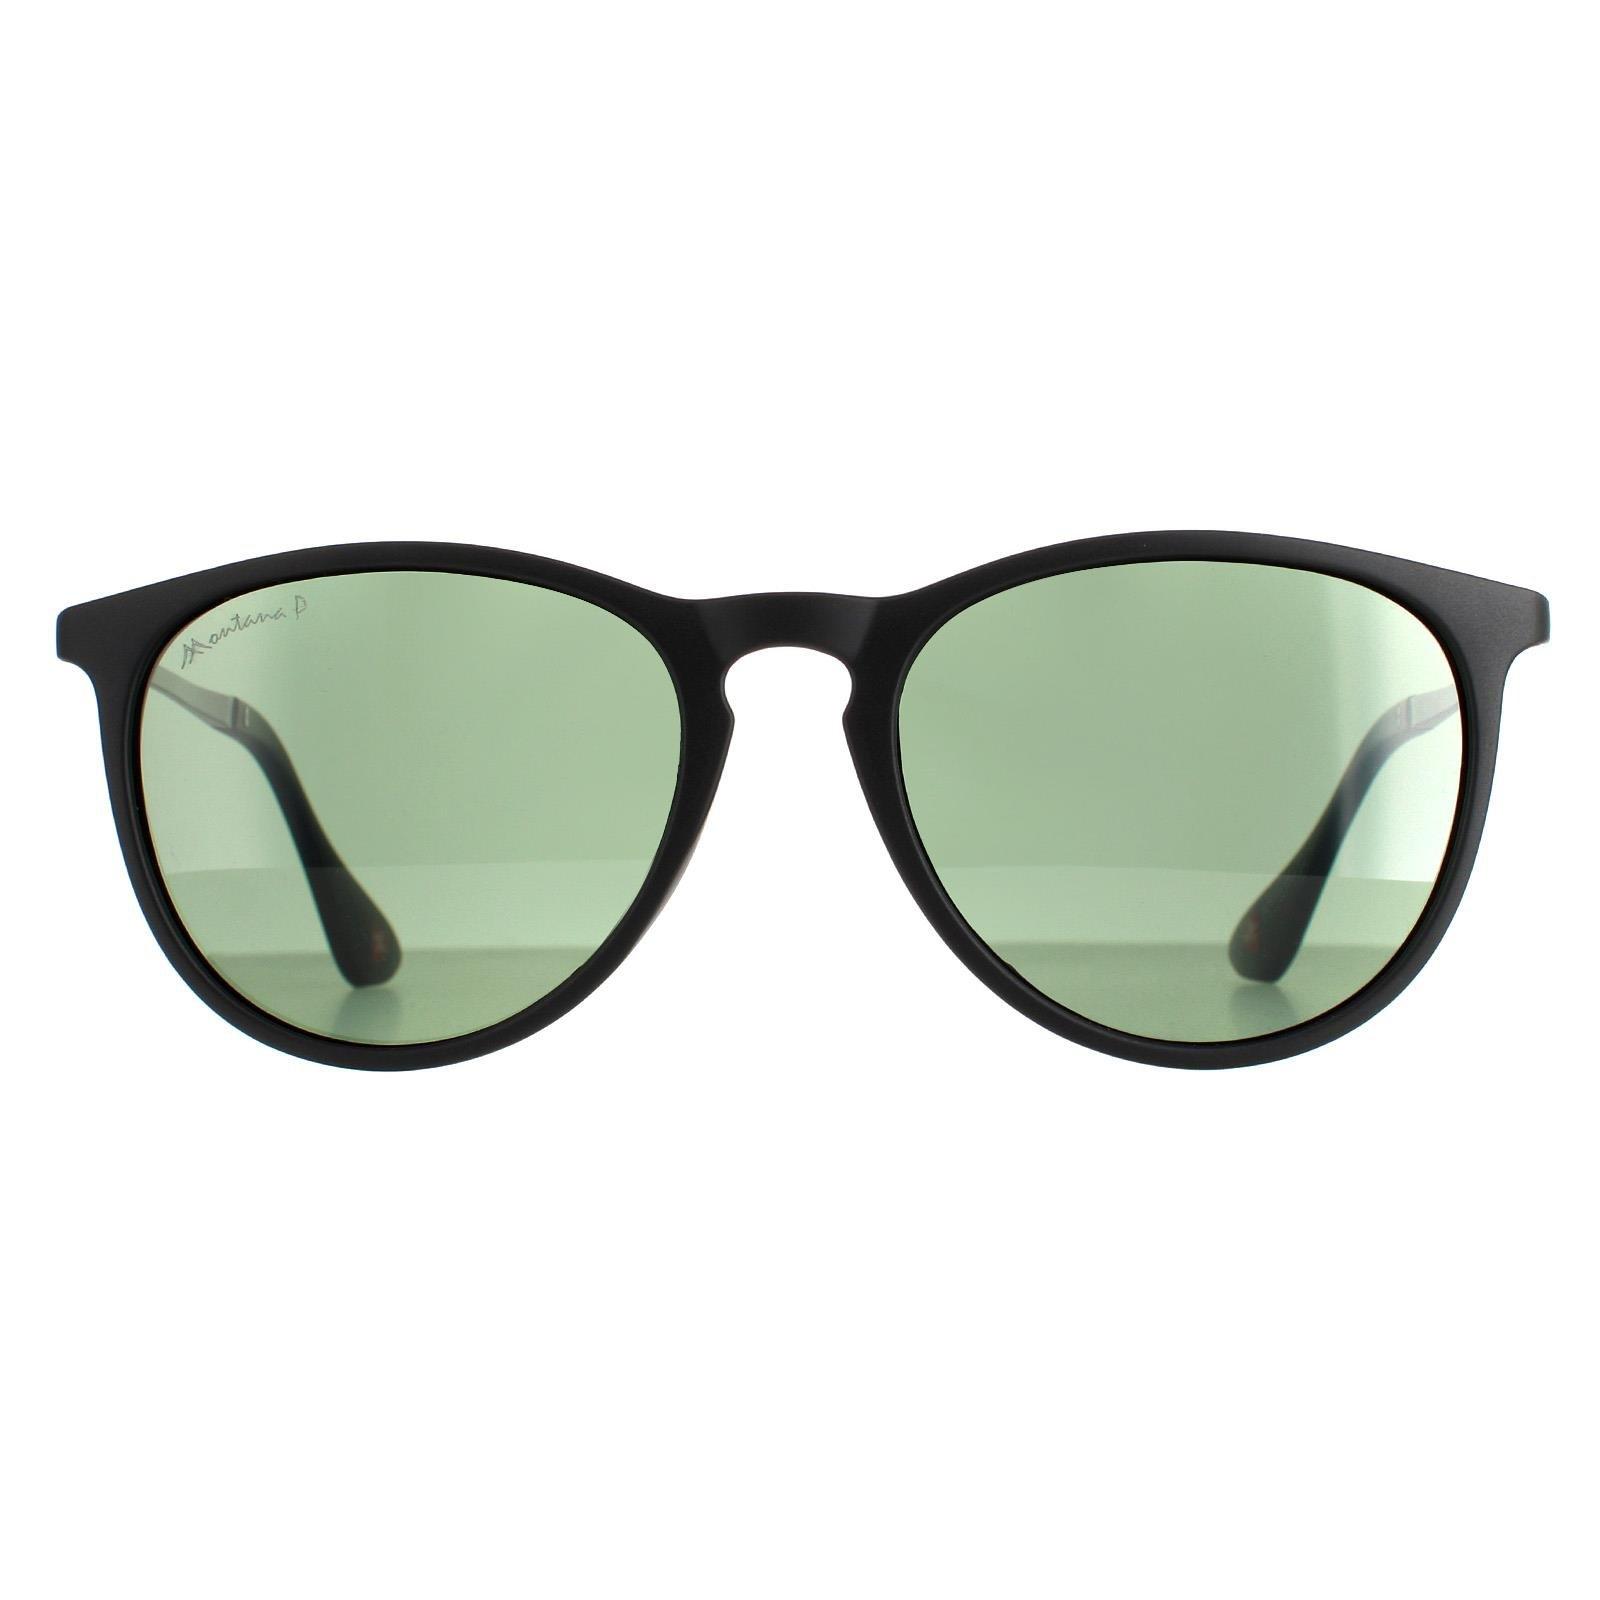 Овальные матовые черные зеленые поляризованные солнцезащитные очки MP24 montana, черный